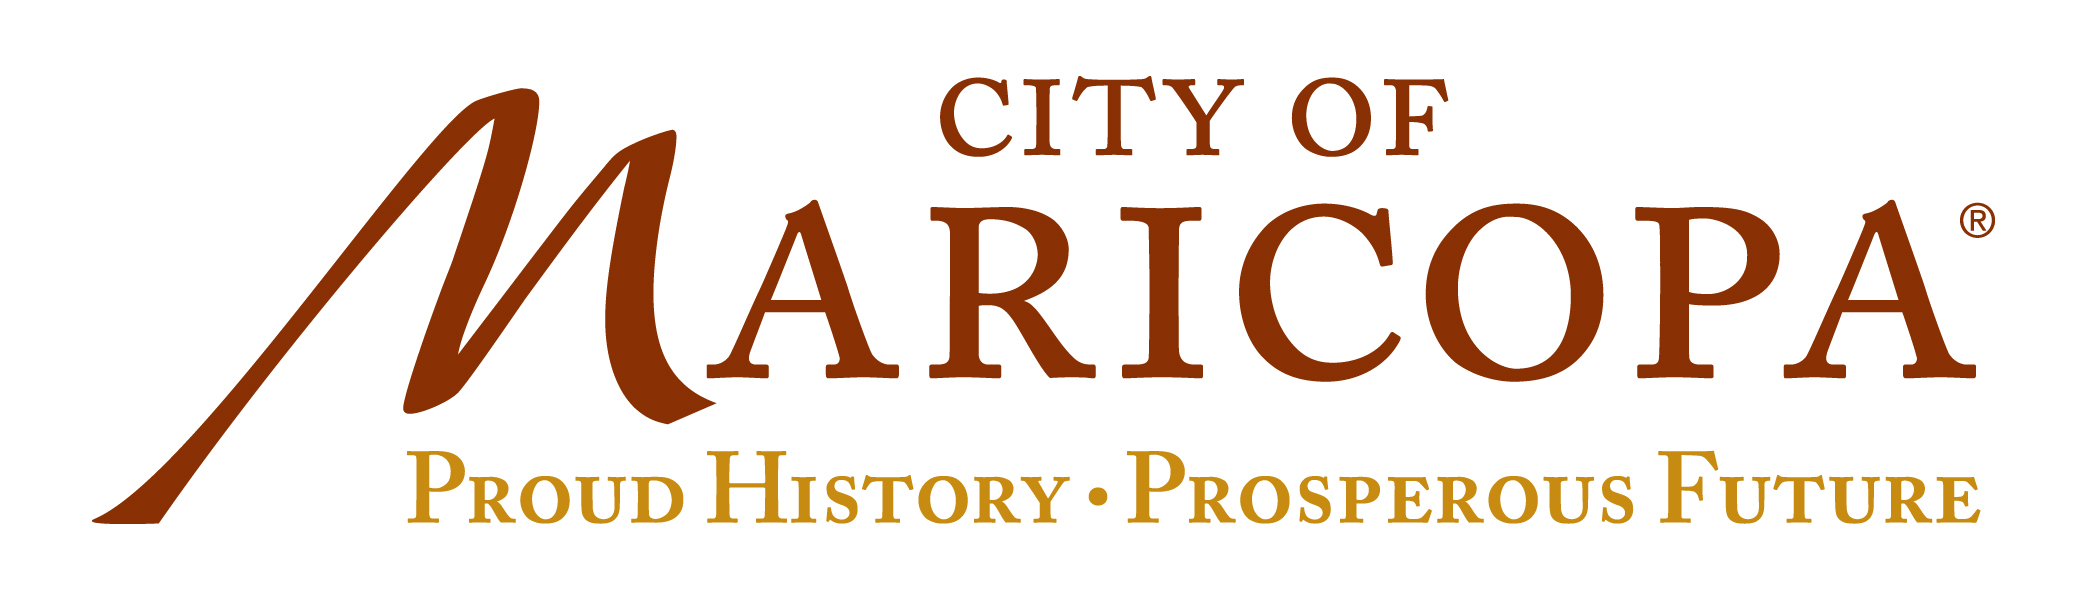 city of maricopa